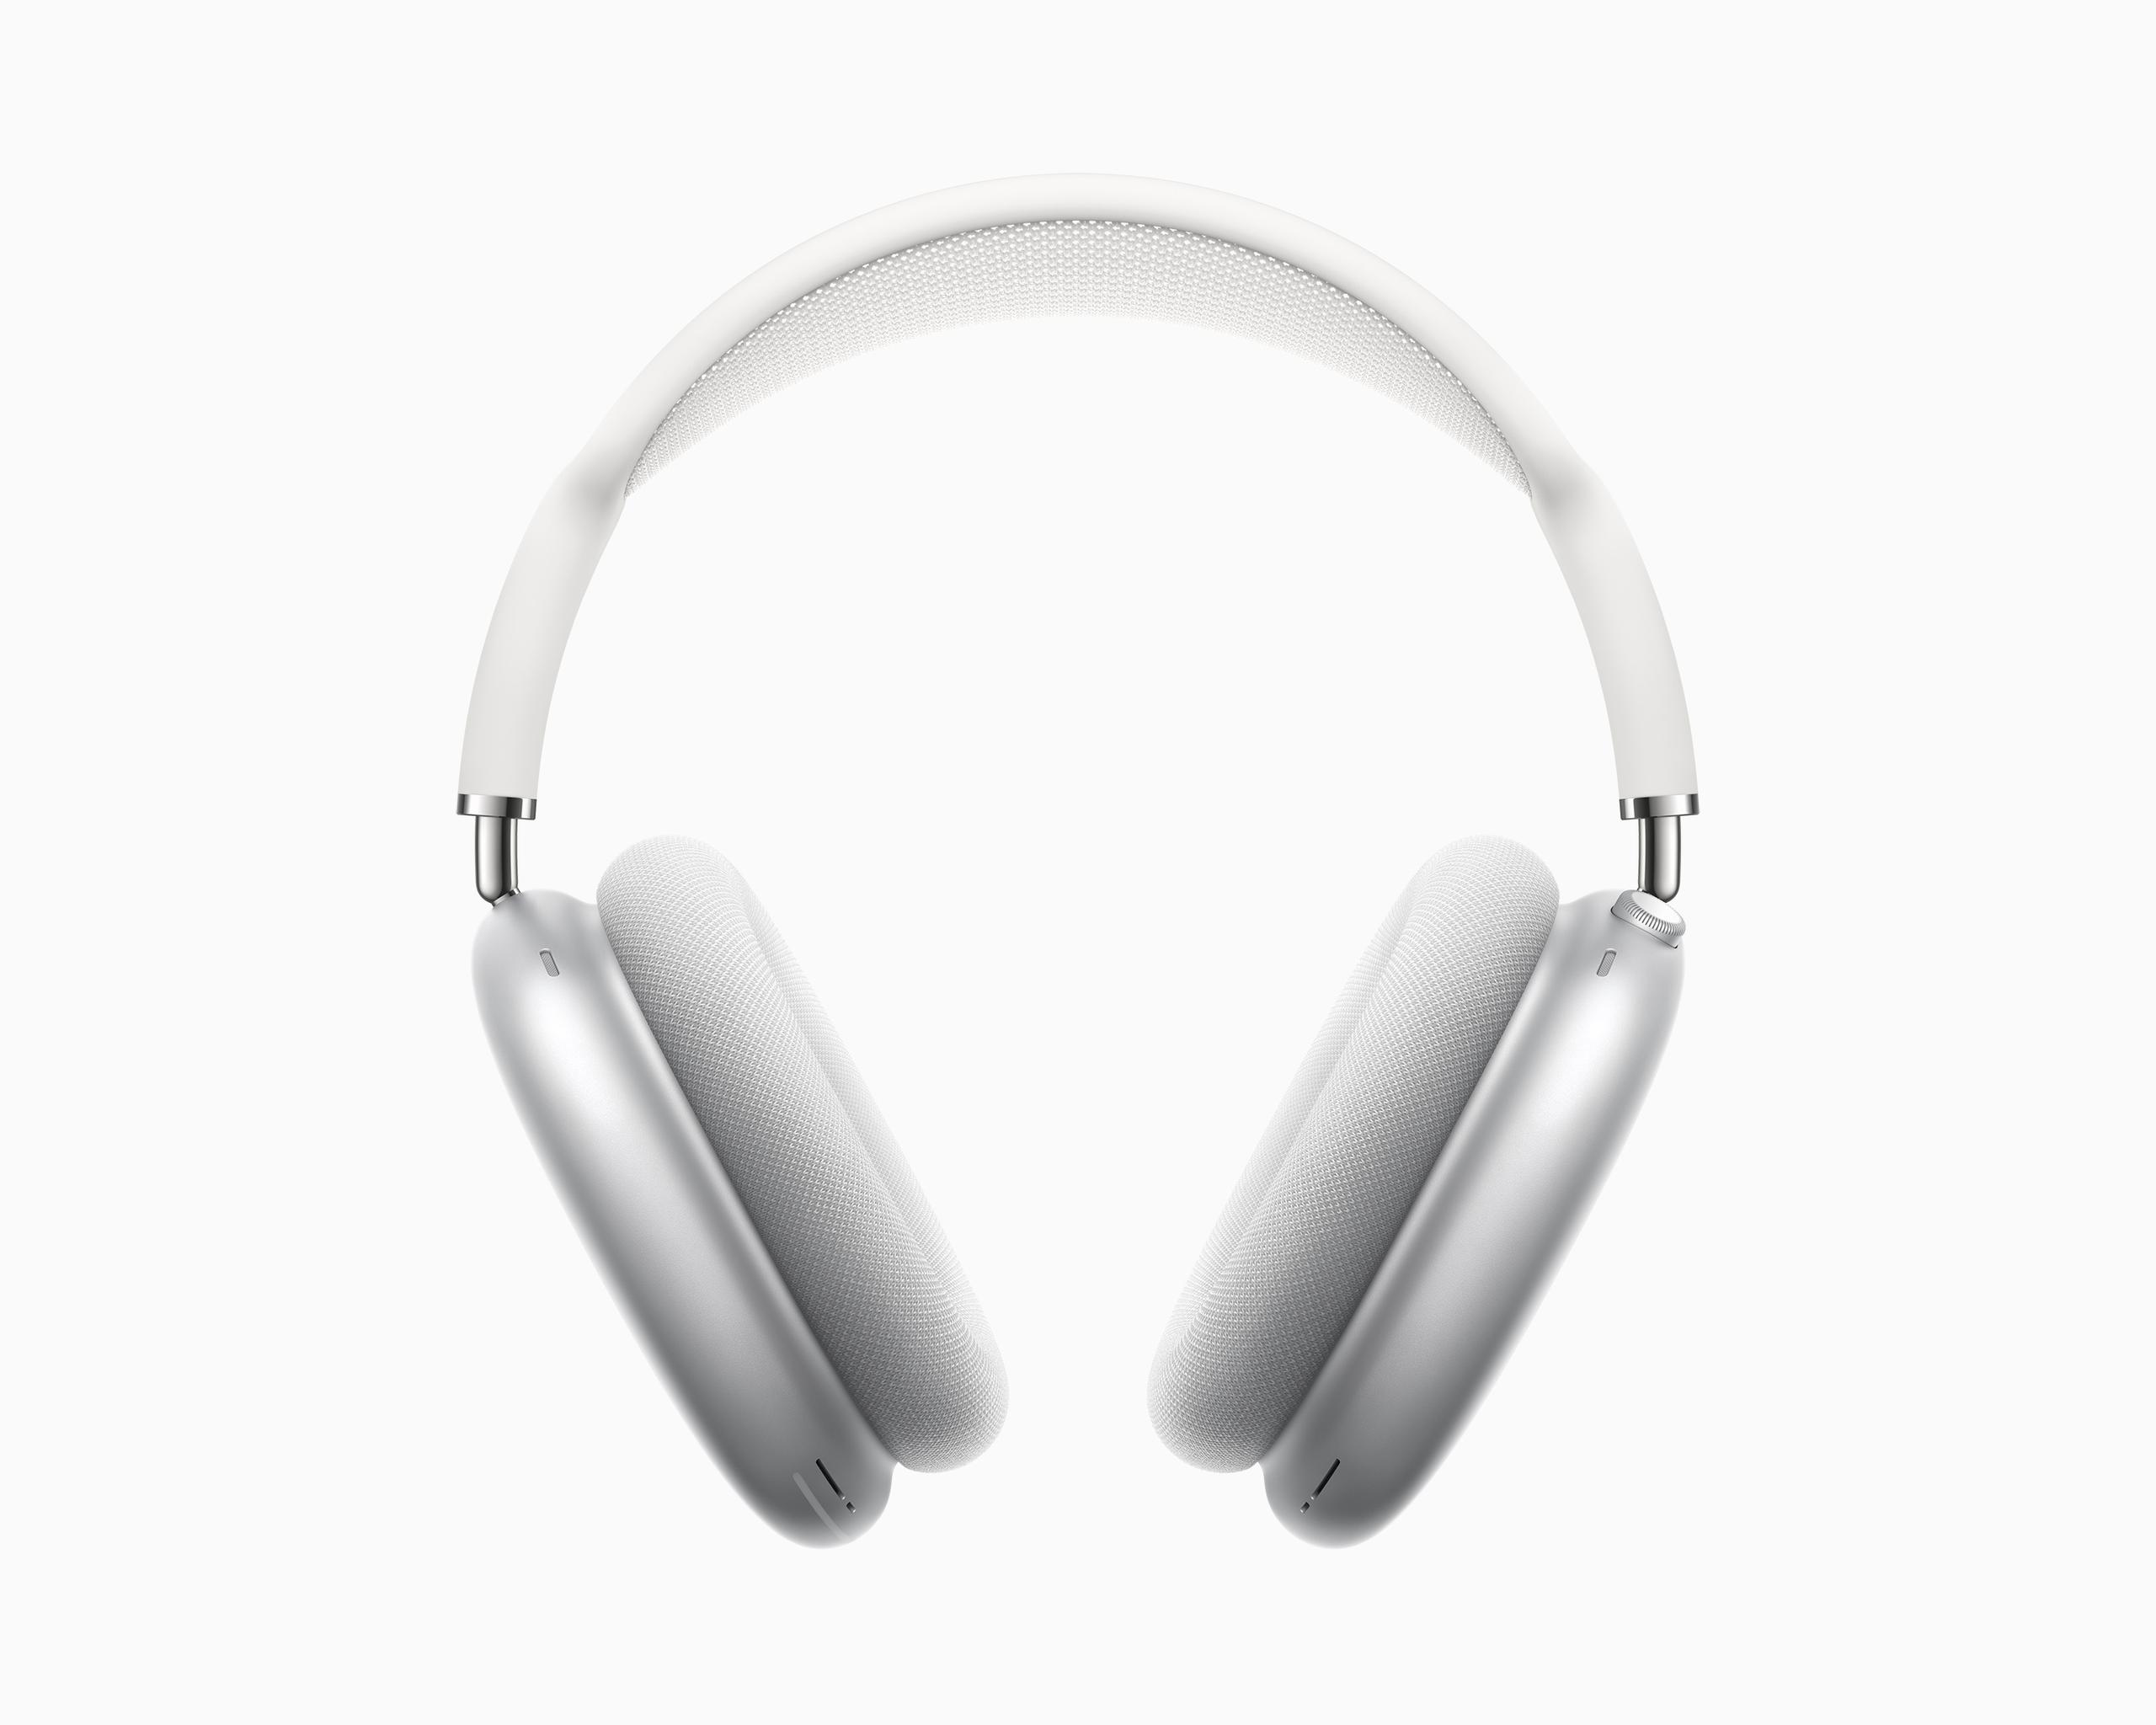 Los AirPods Max contarán con un chip H1 y software avanzado para una experiencia auditiva innovadora.